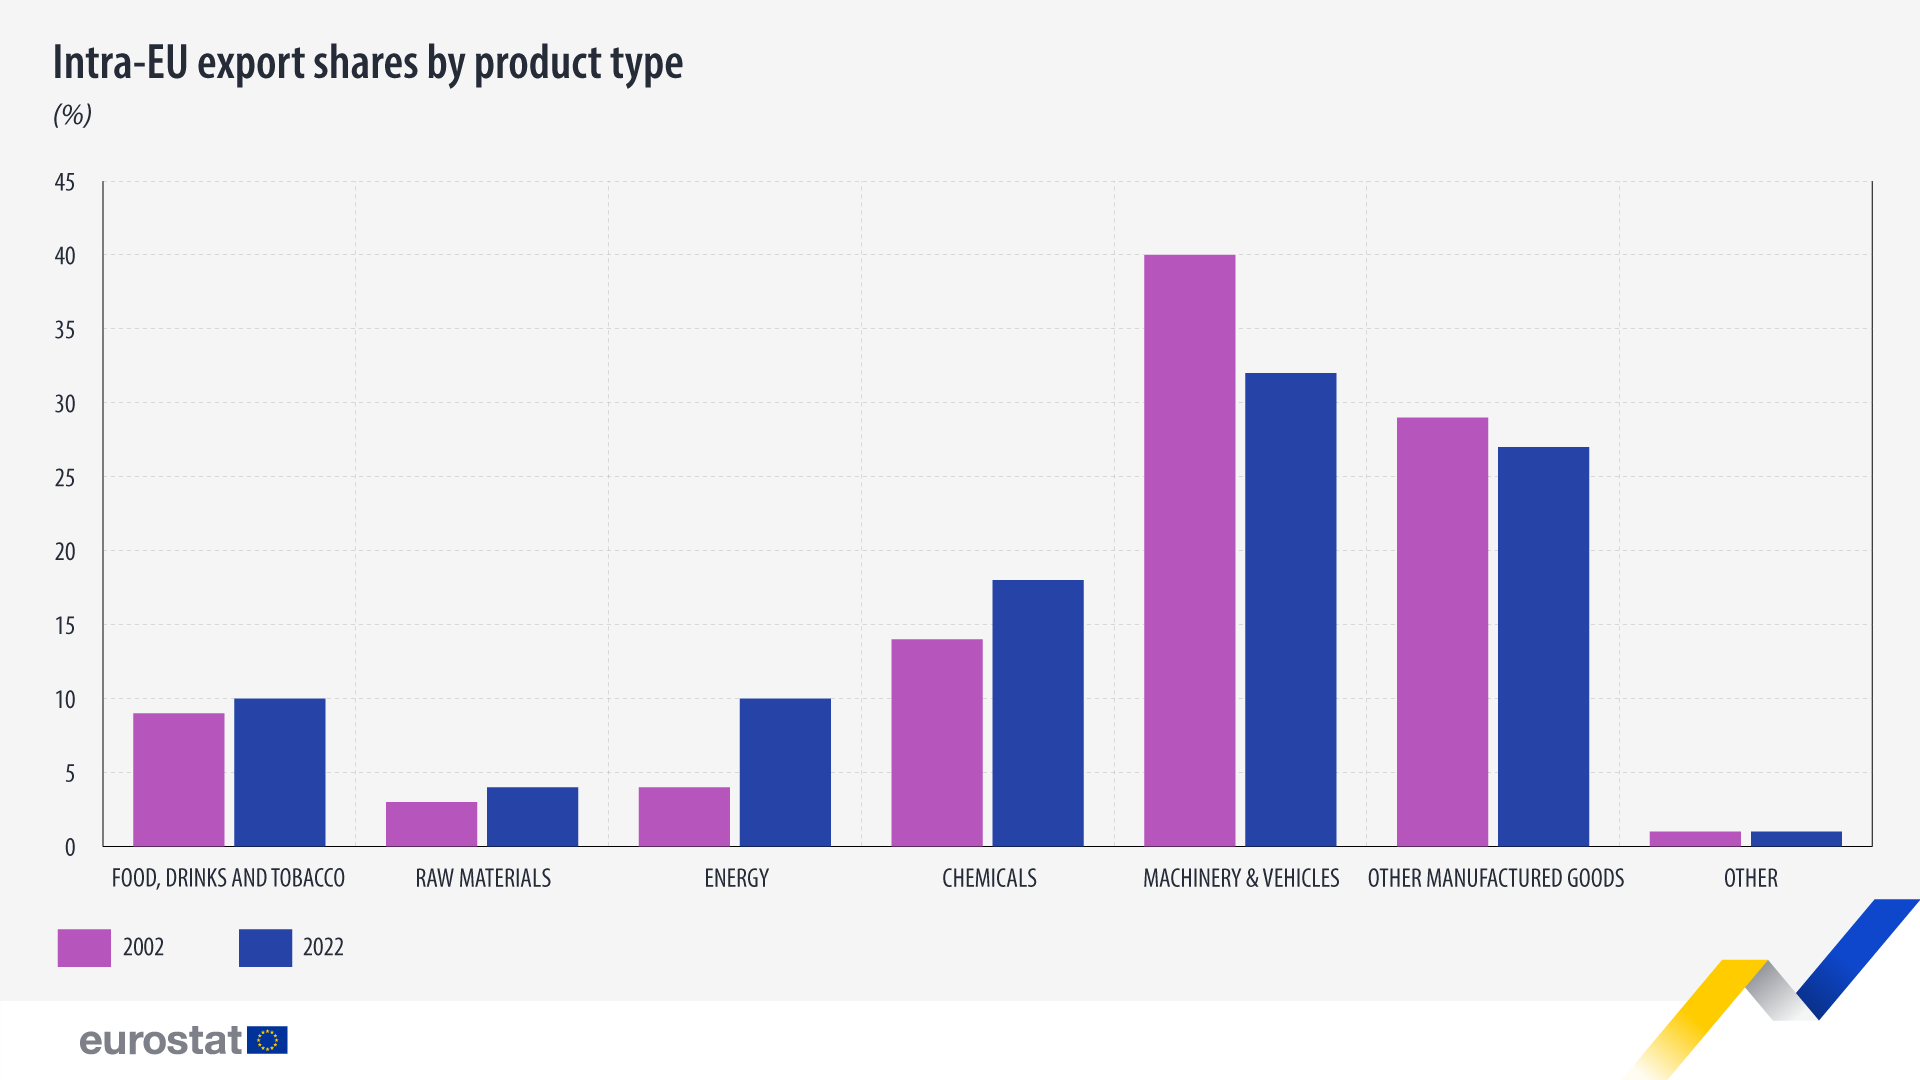 Γράφημα ράβδων: Μερίδια εξαγωγών εντός της ΕΕ ανά τύπο προϊόντος, %